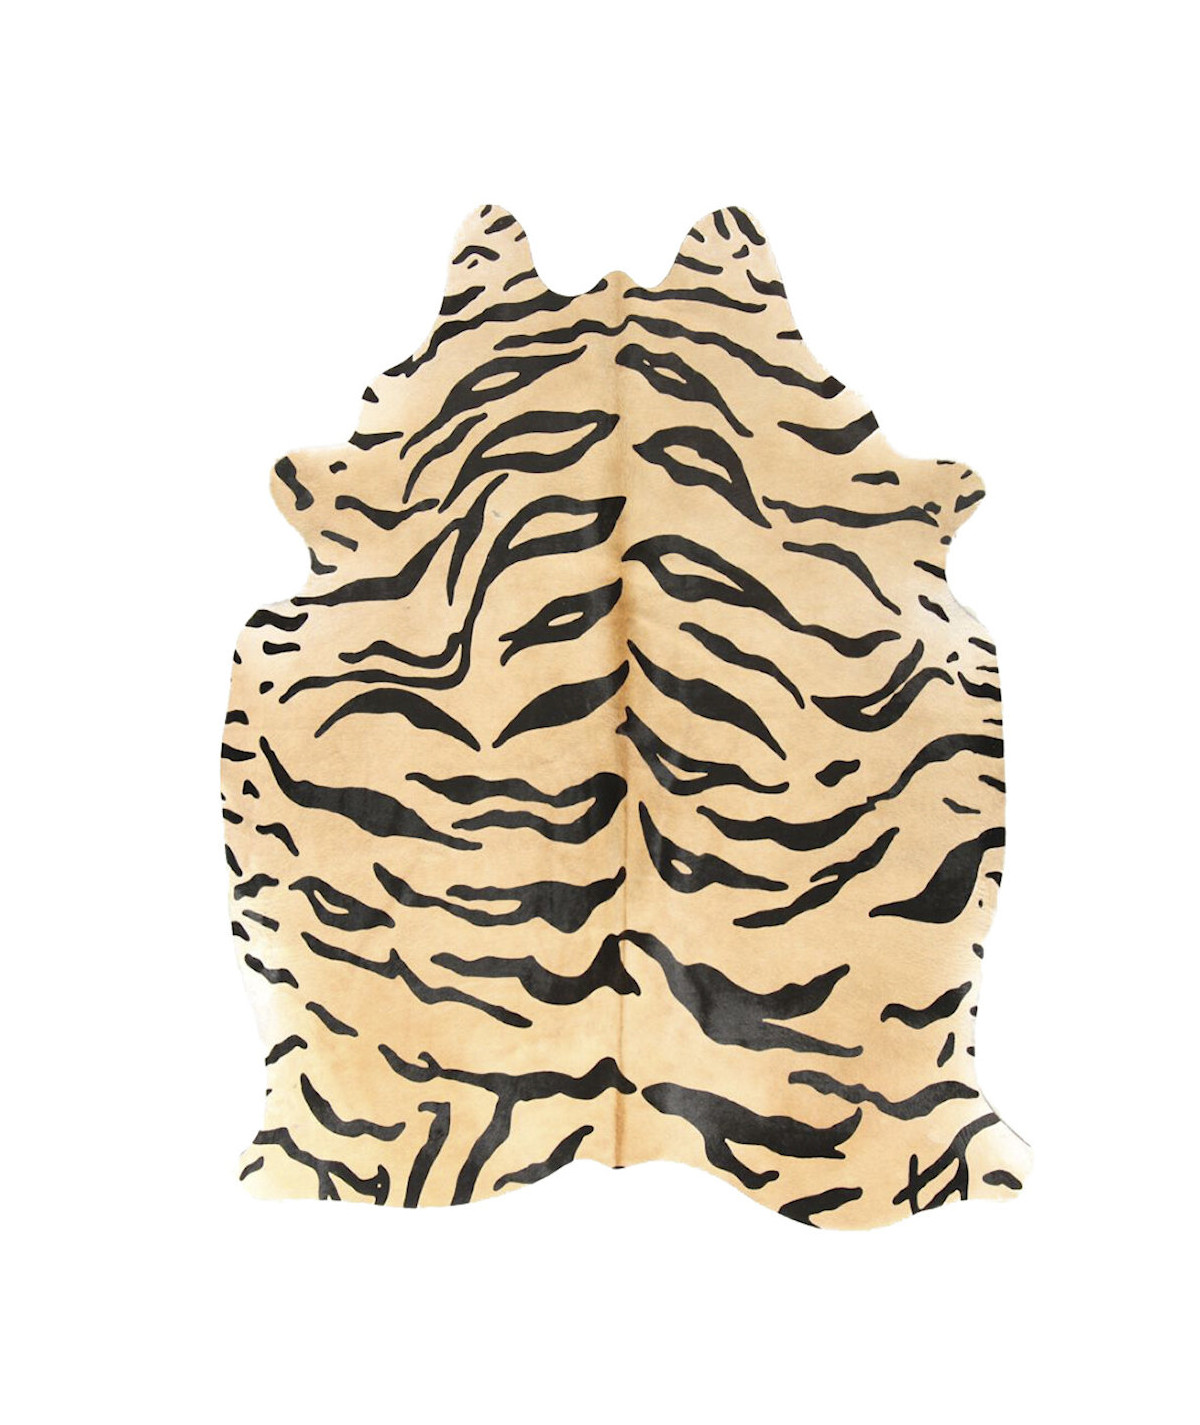 Tapis en peau de vache tigré 180x250cm - Yesdeko